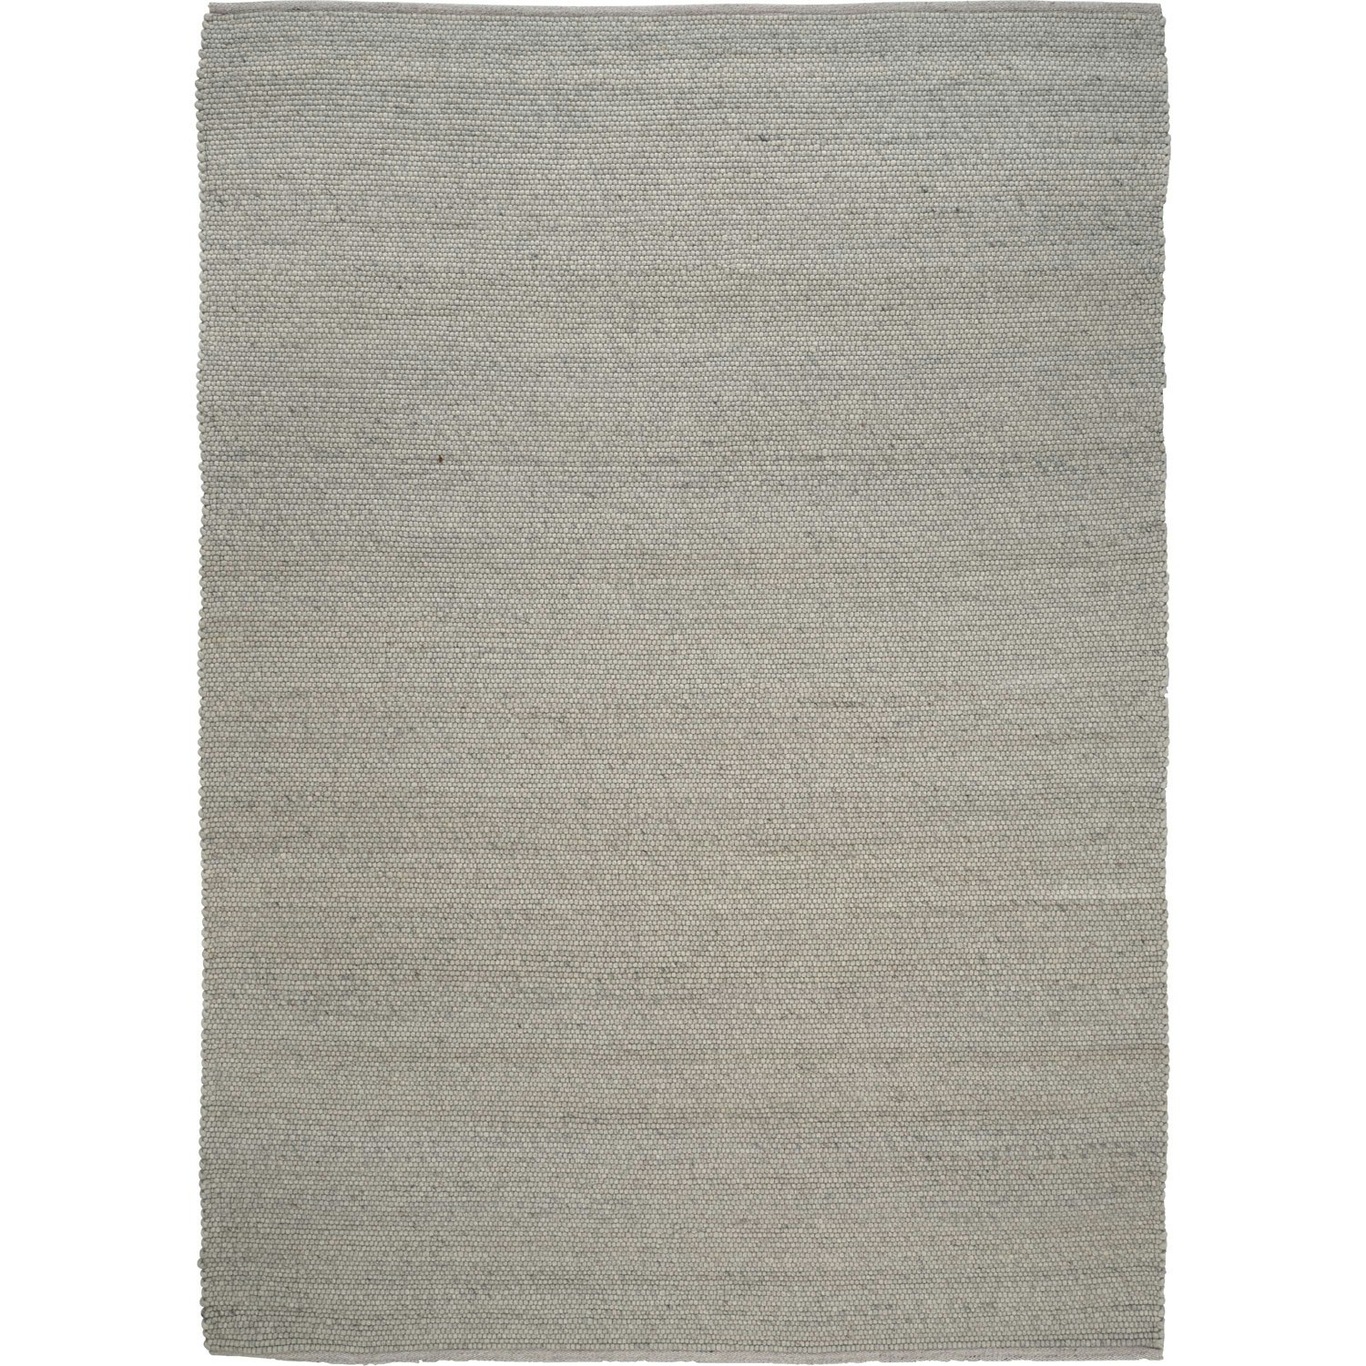 Merino Matto 140x200 cm, Concrete